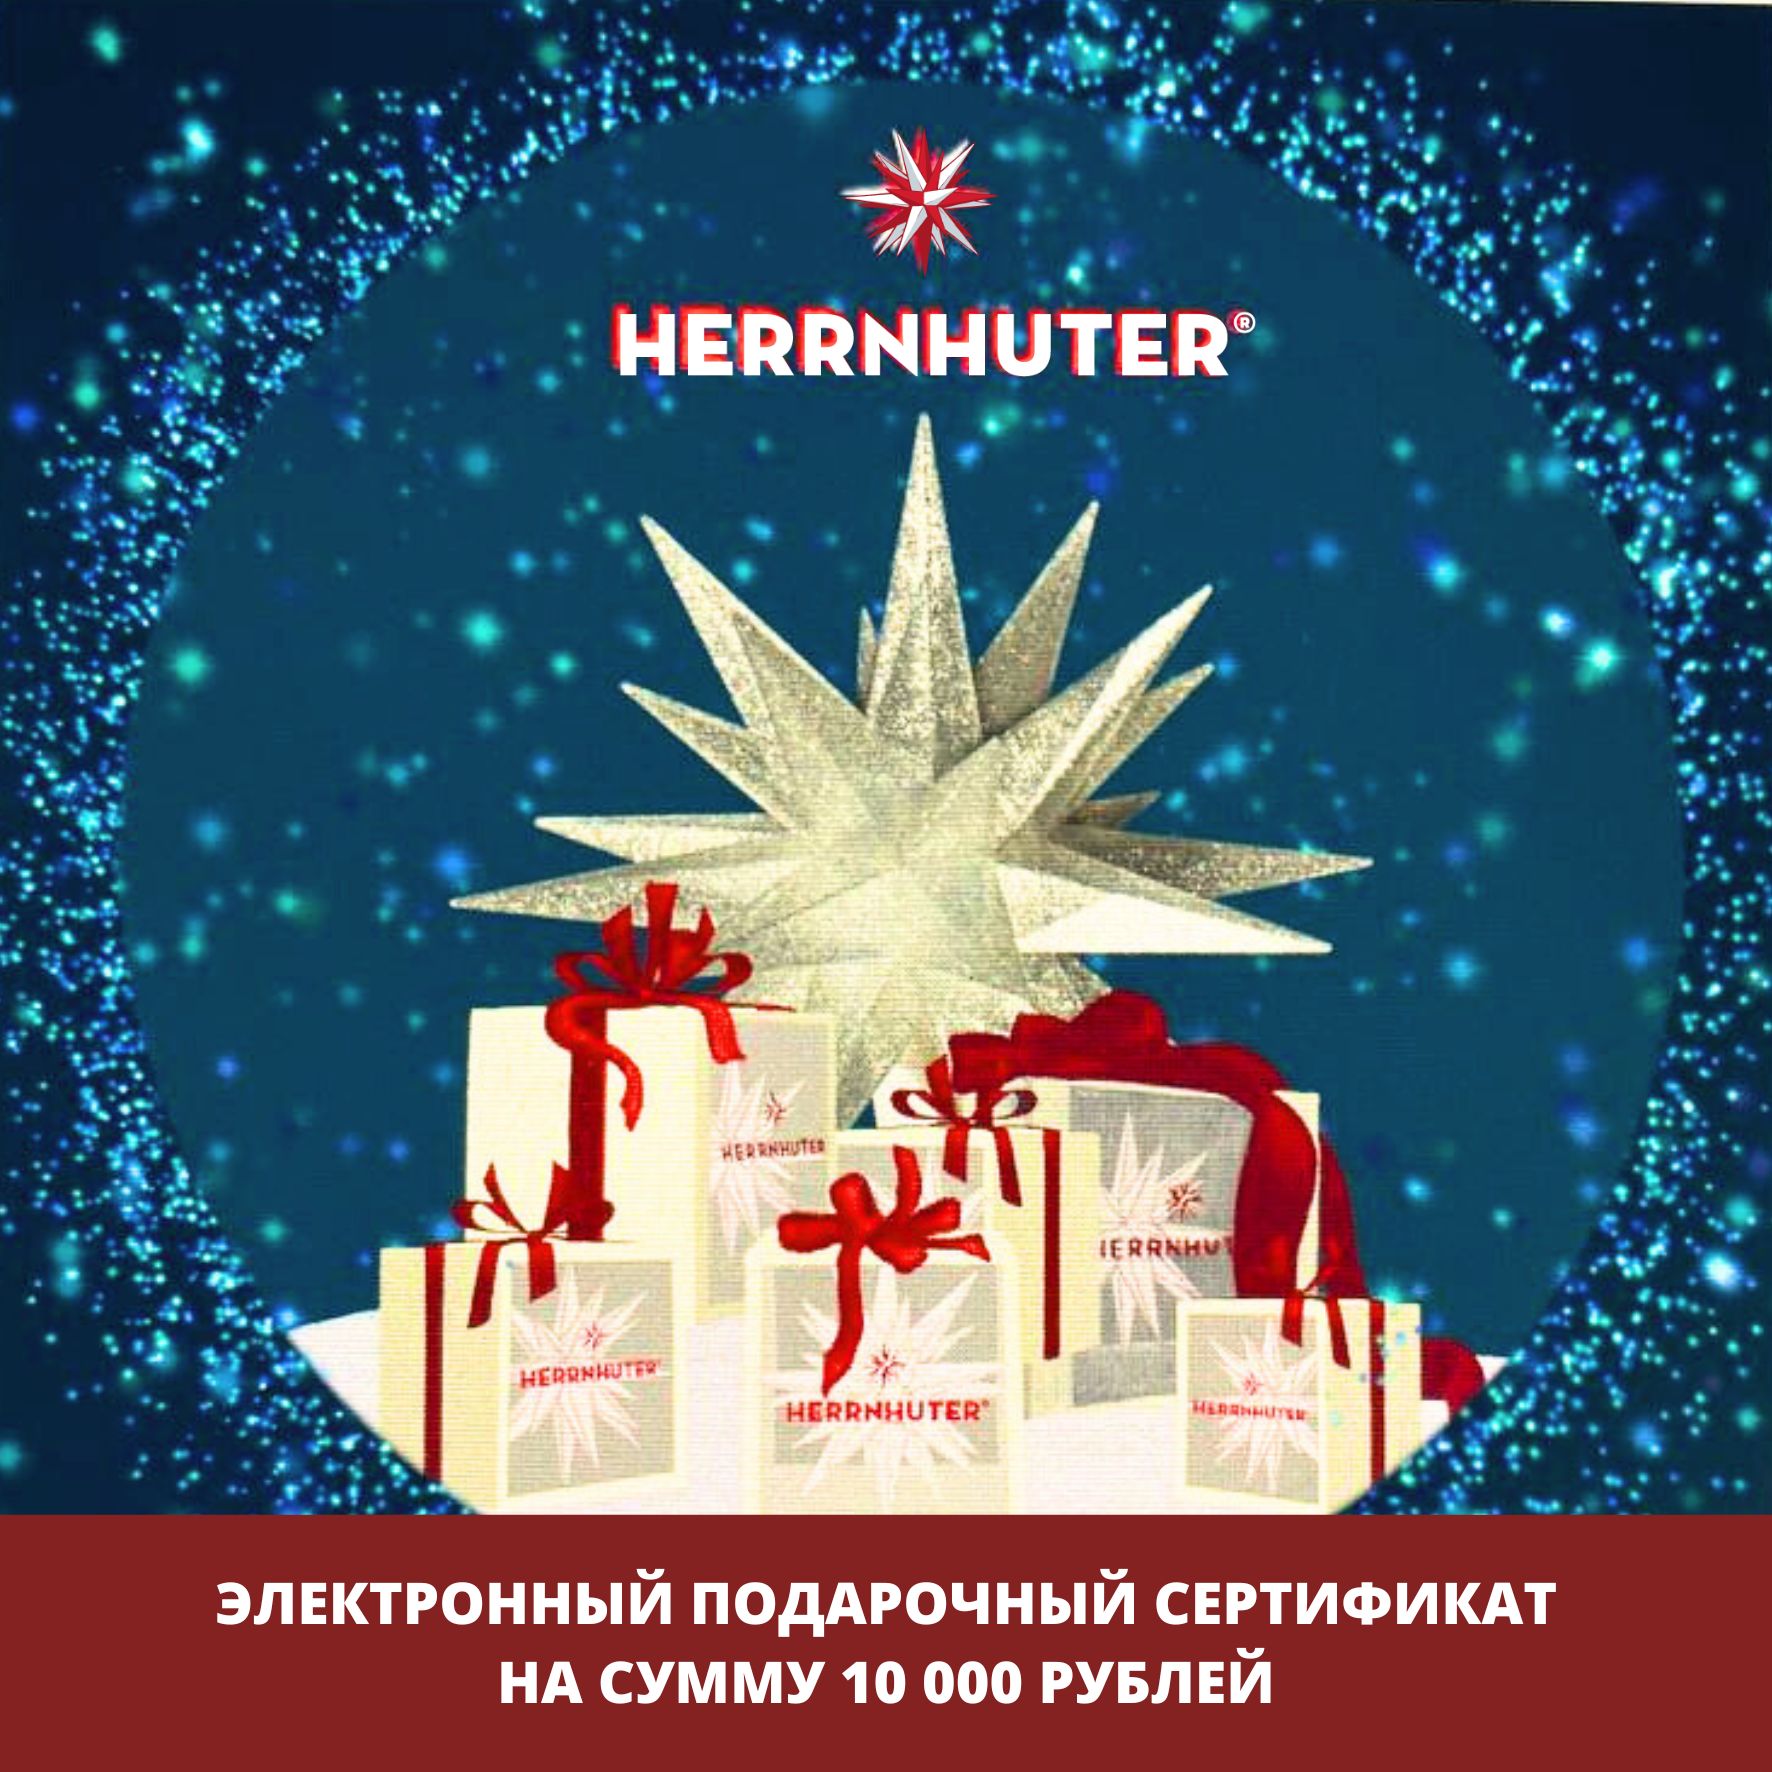 Электронный подарочный сертификат 10000 руб